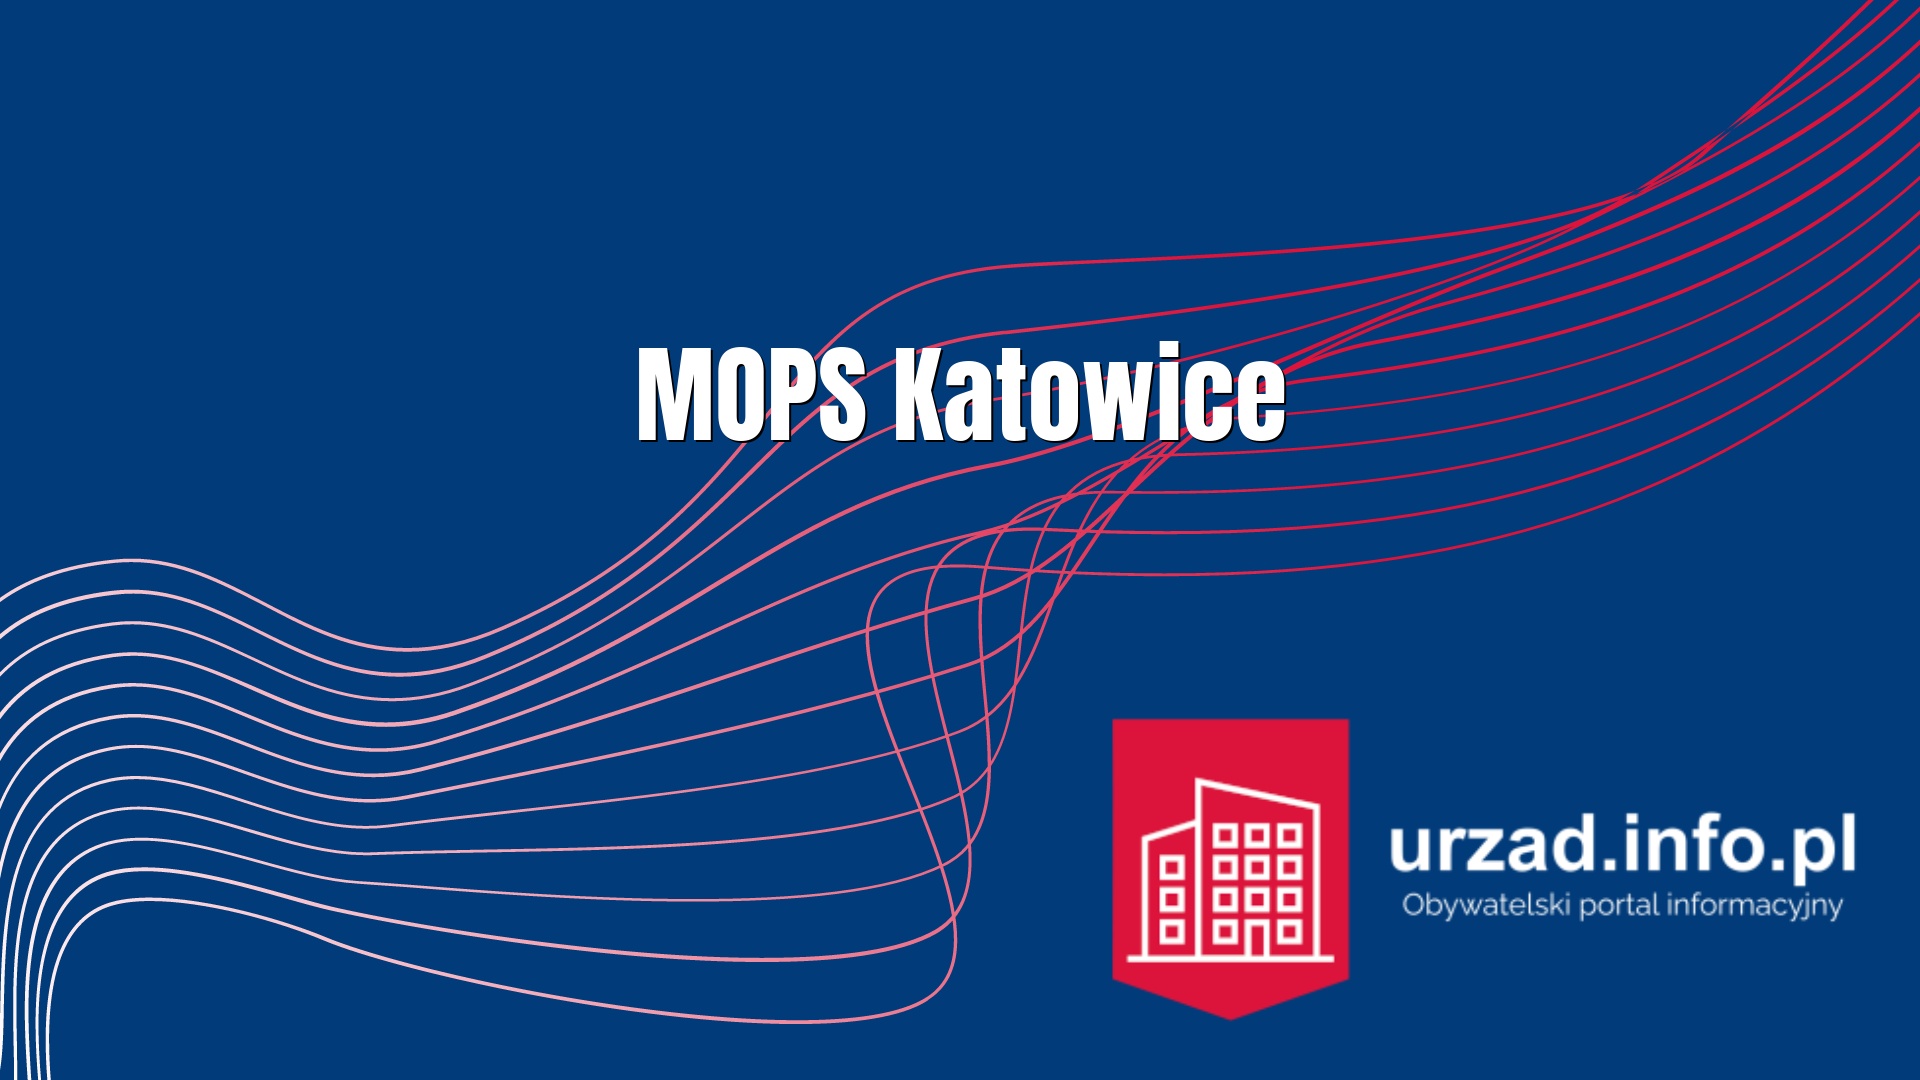 MOPS Katowice - Miejski Ośrodek Pomocy Społecznej w Katowicach